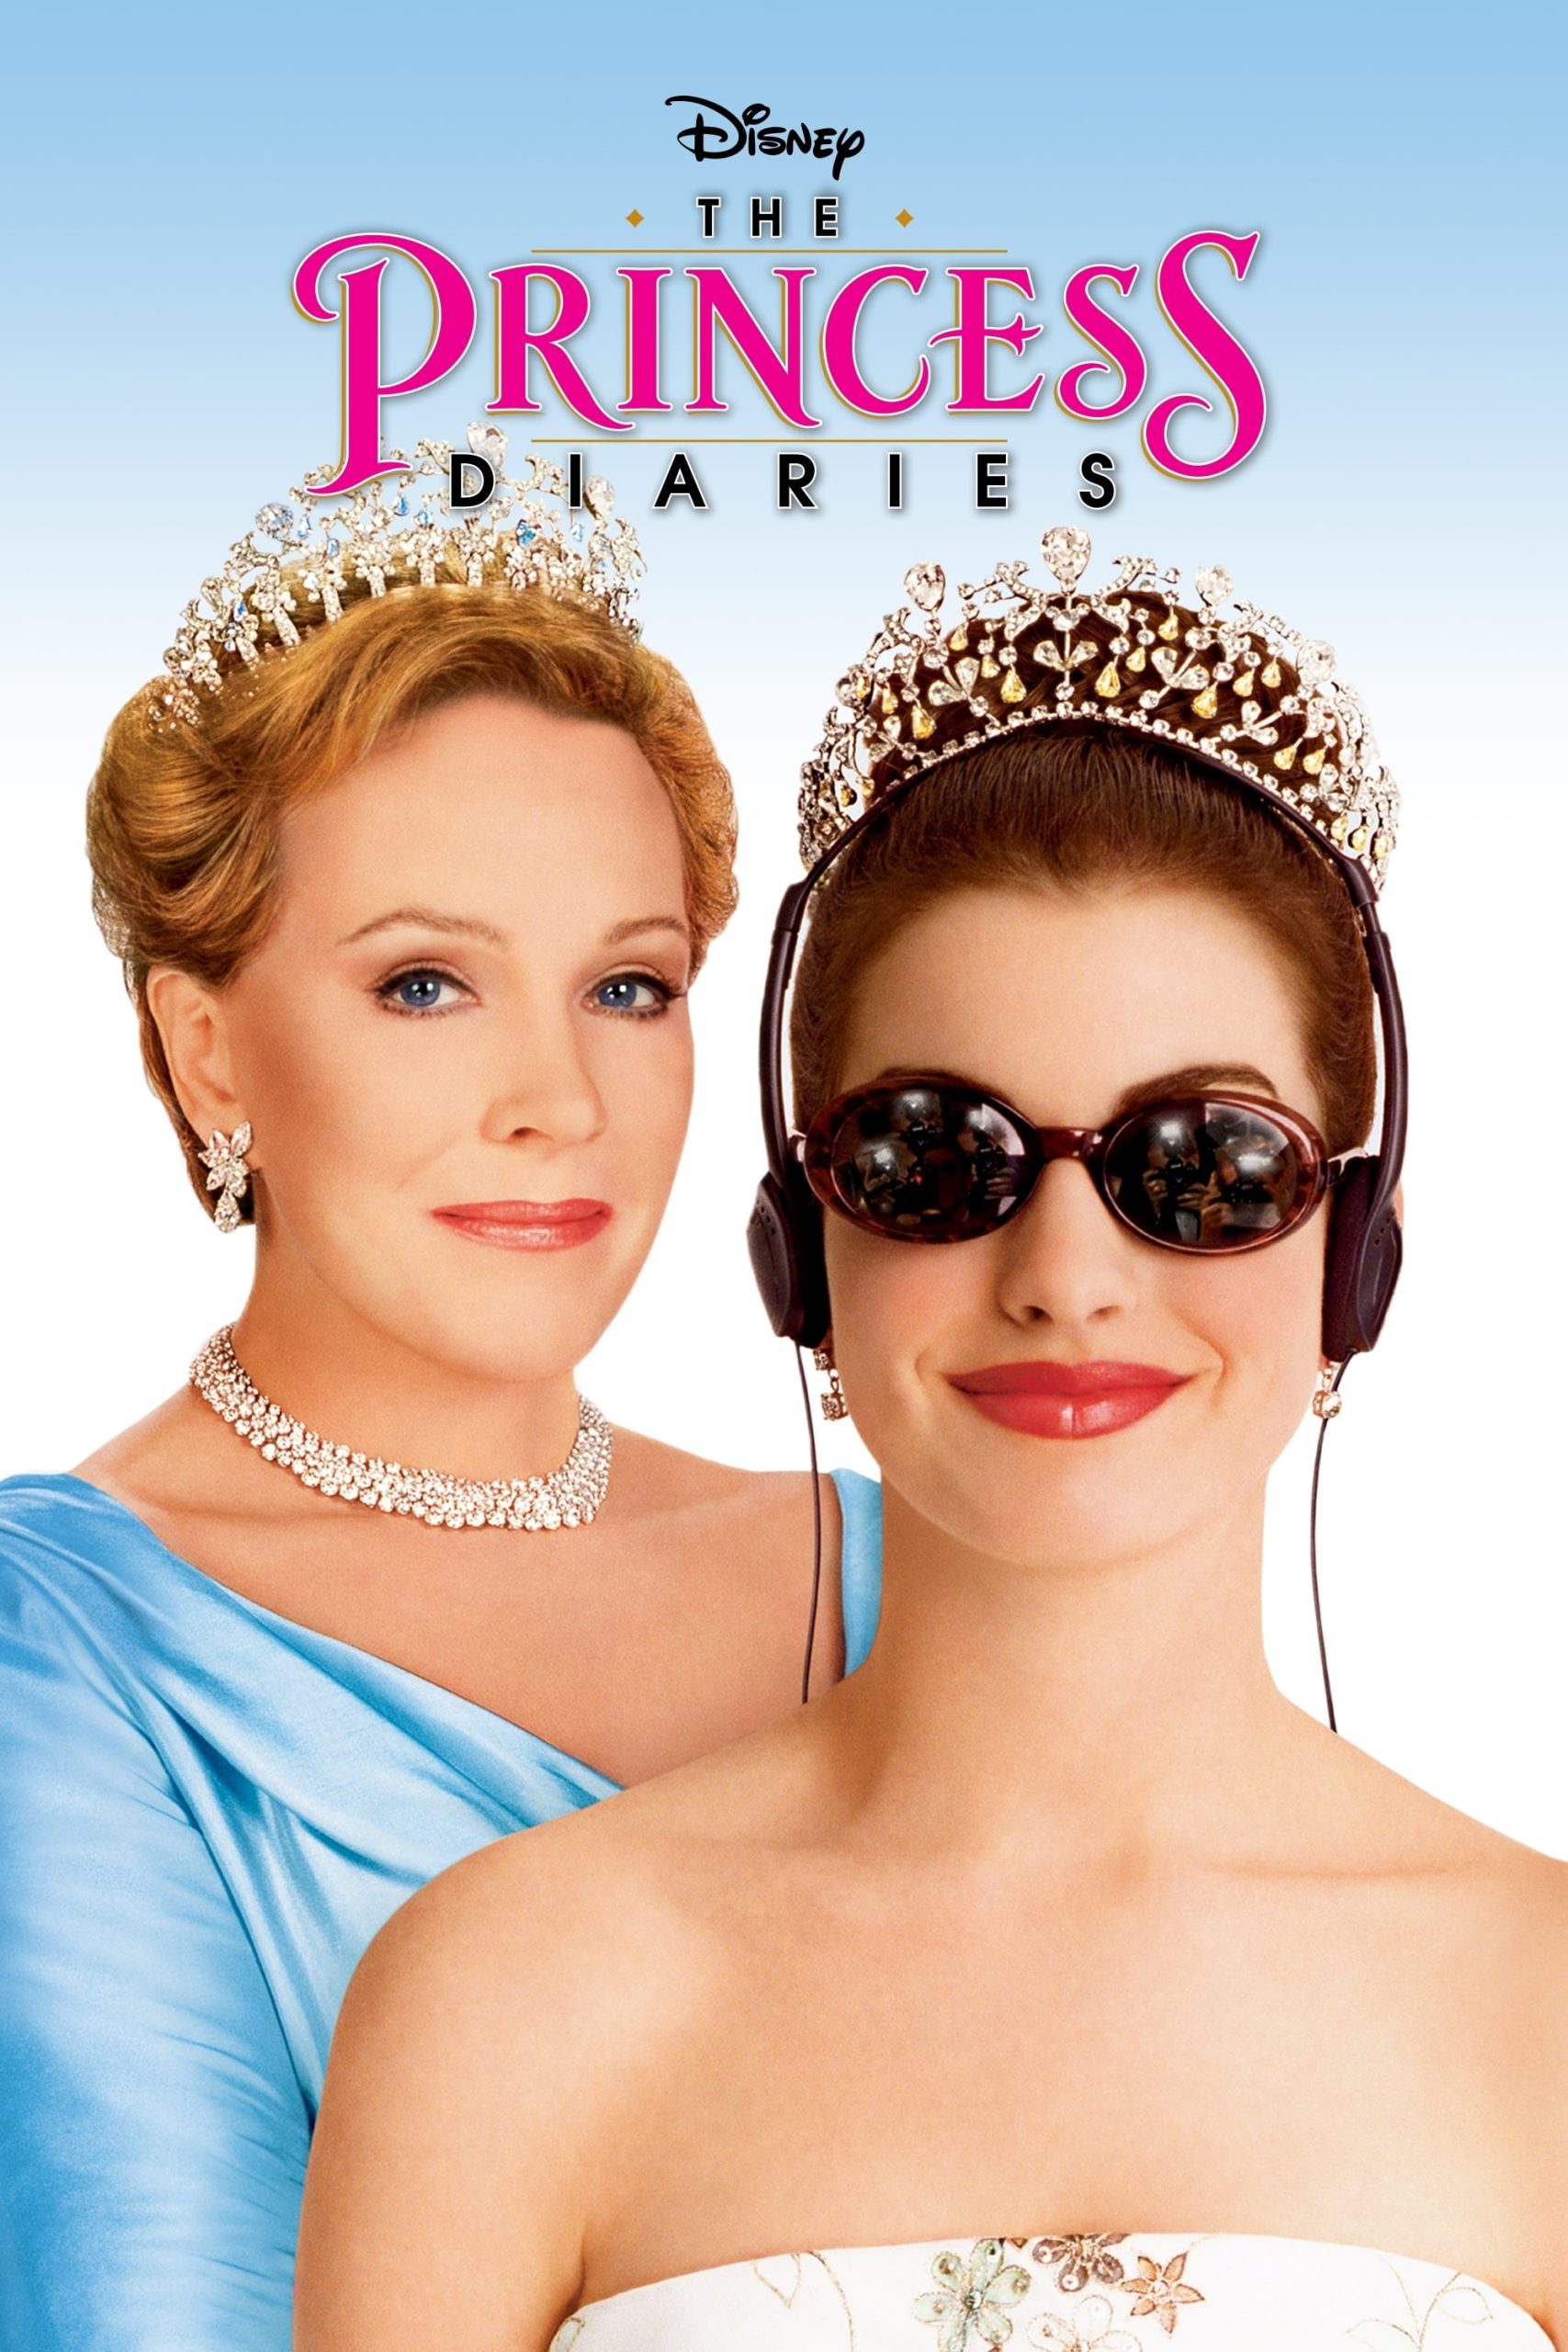 ดูหนังออนไลน์ฟรี The Princess Diaries บันทึกรักเจ้าหญิงมือใหม่